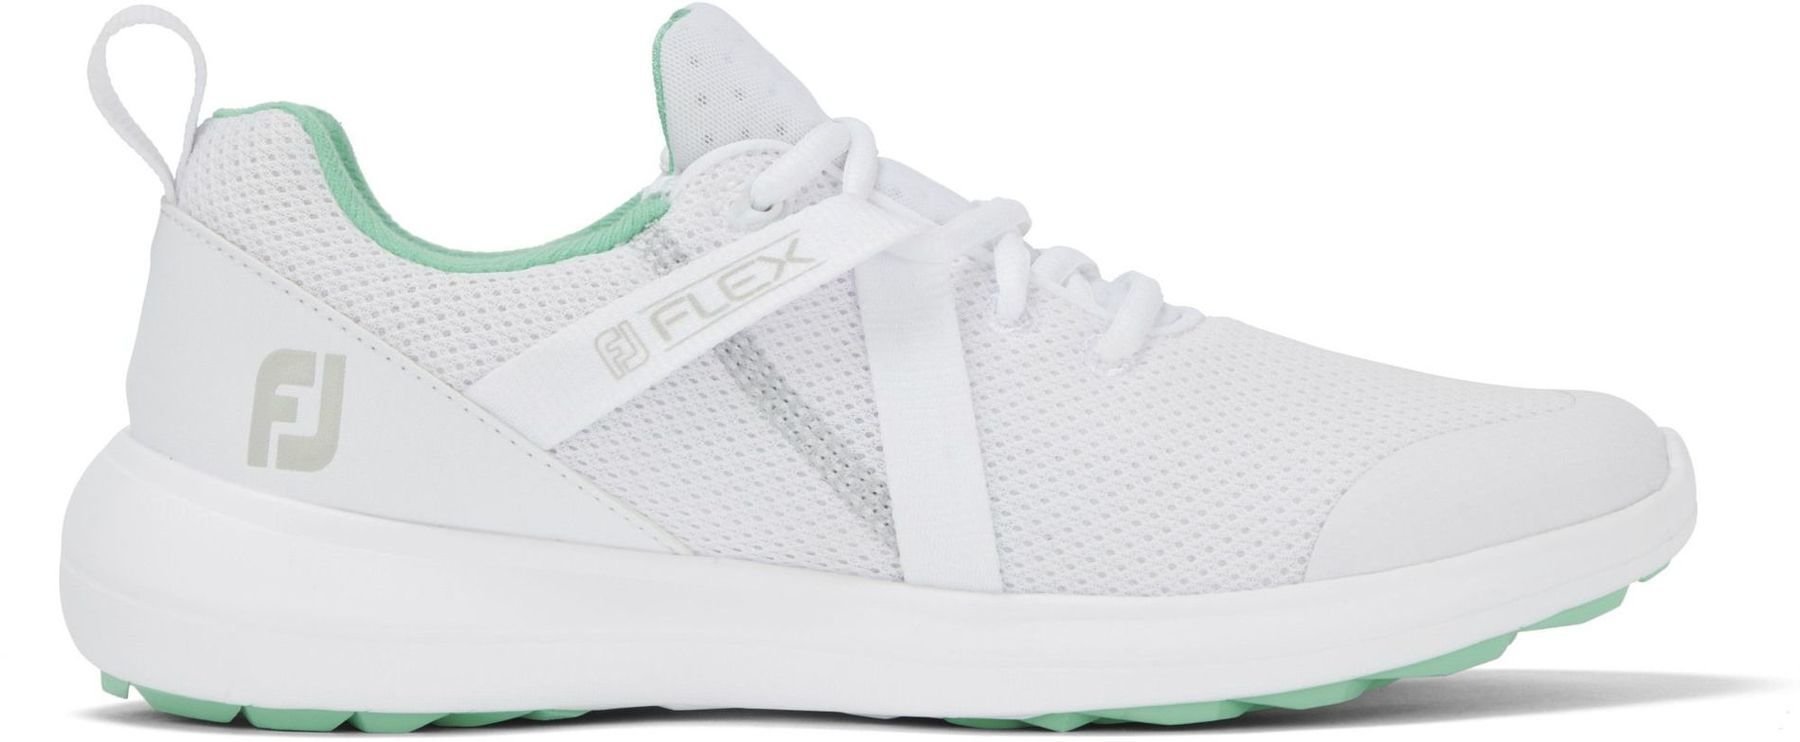 Chaussures de golf pour femmes Footjoy Flex White/Green 38,5